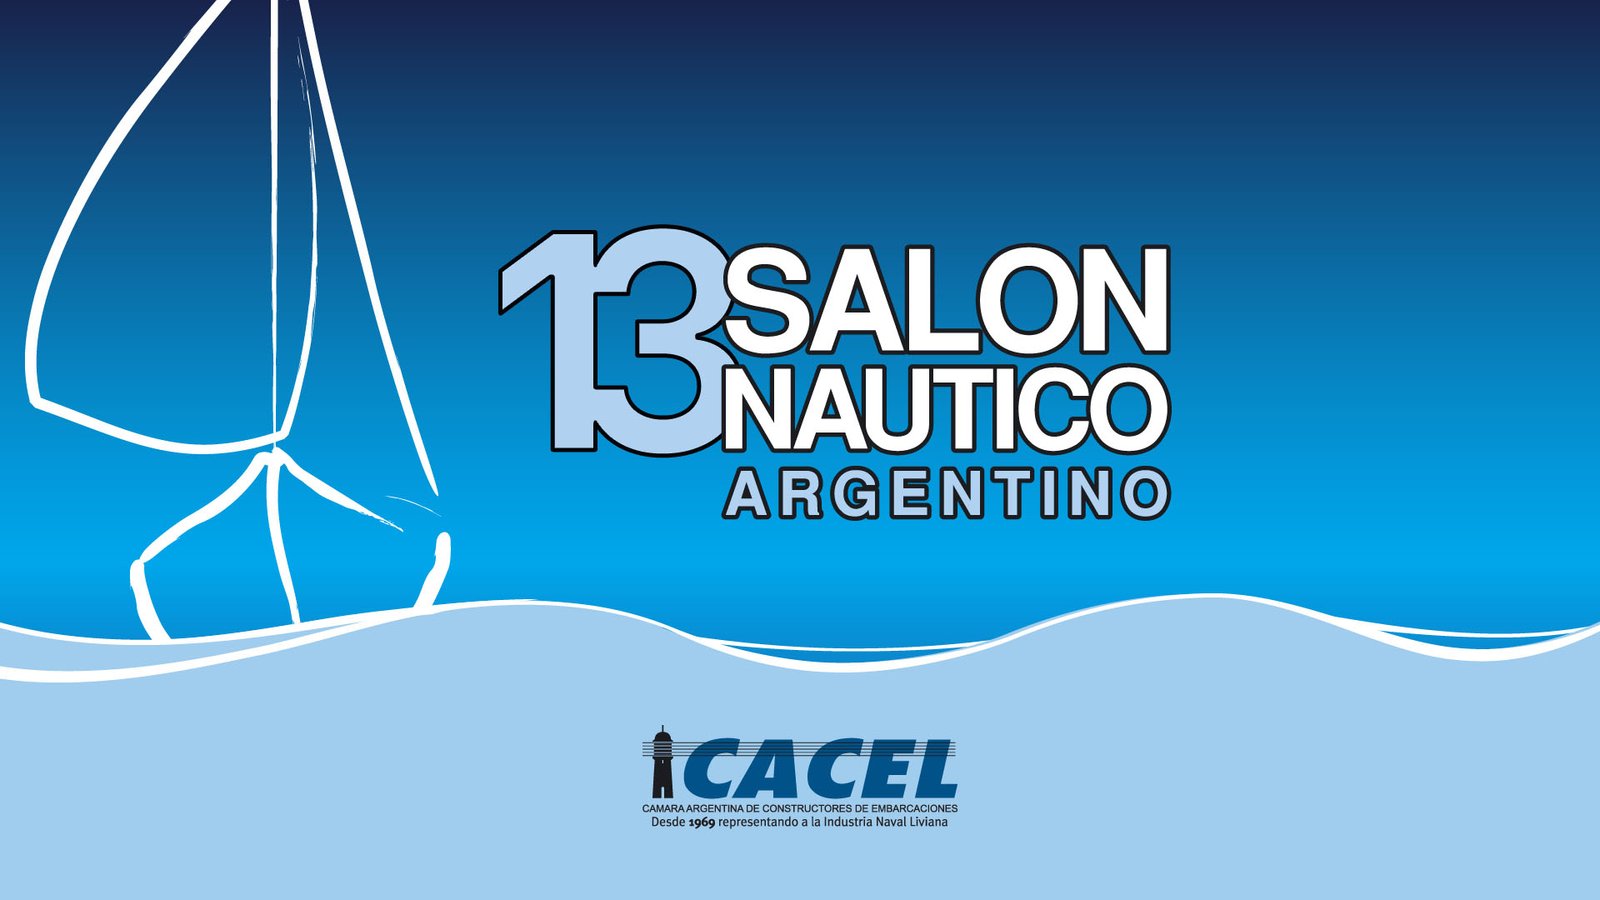 13 salon nautico argentino